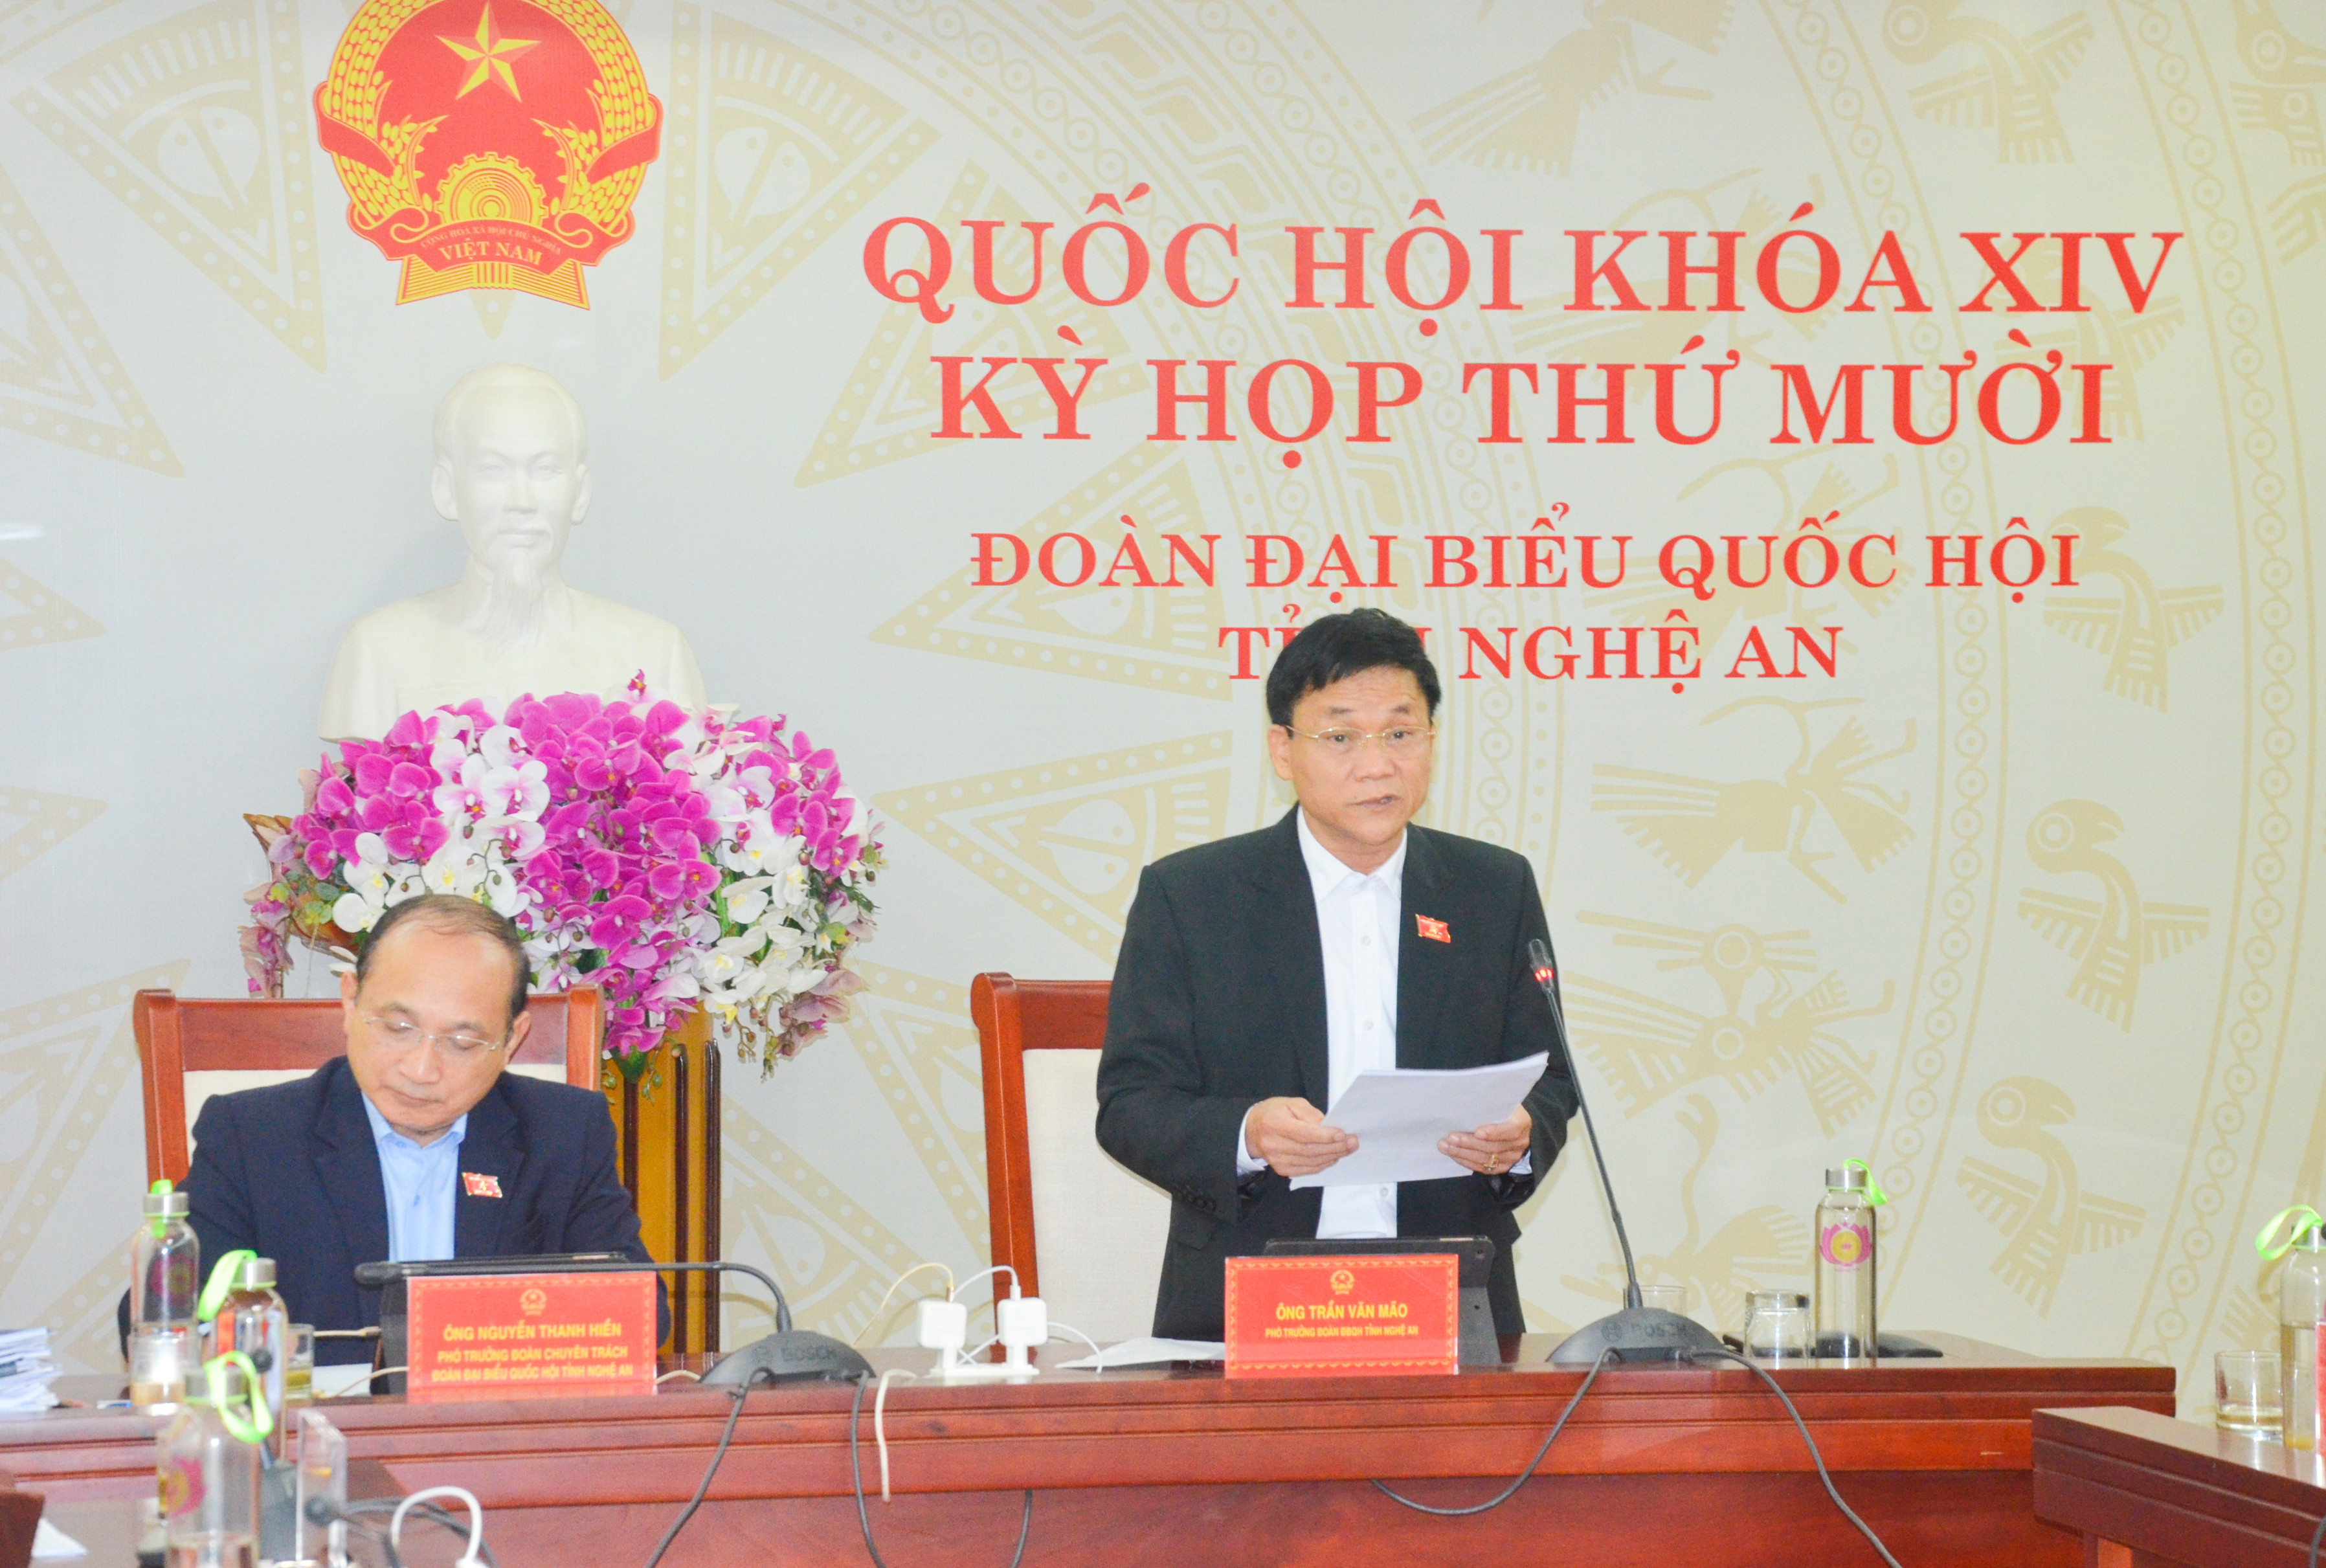 Đại biểu Trần Văn Mãophát biểu  thảo luận tại phiên họp. Ảnh: Thanh Lê